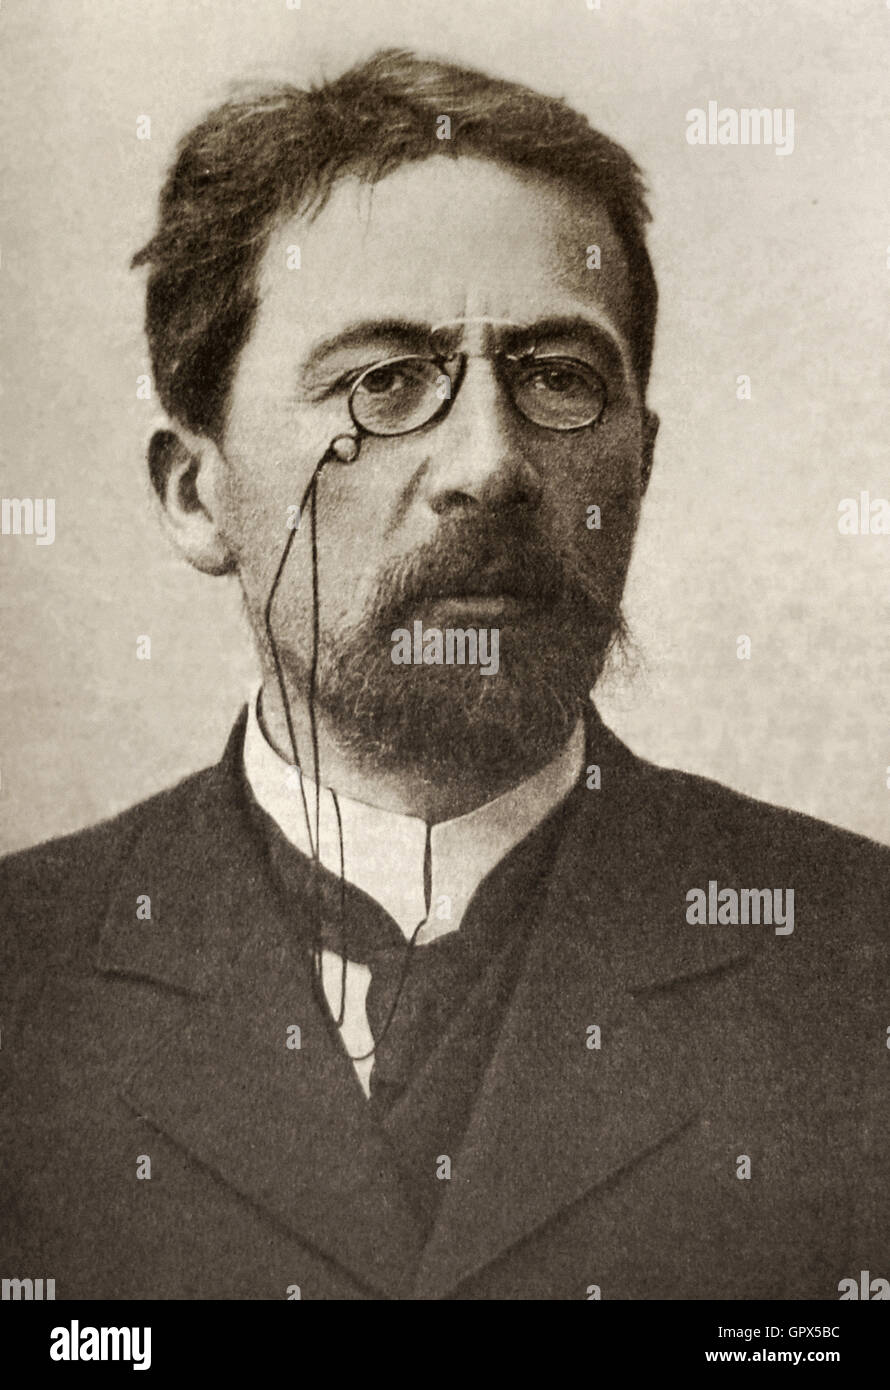 Anton Chekhov 1903 Photographic portrait Stock Photo